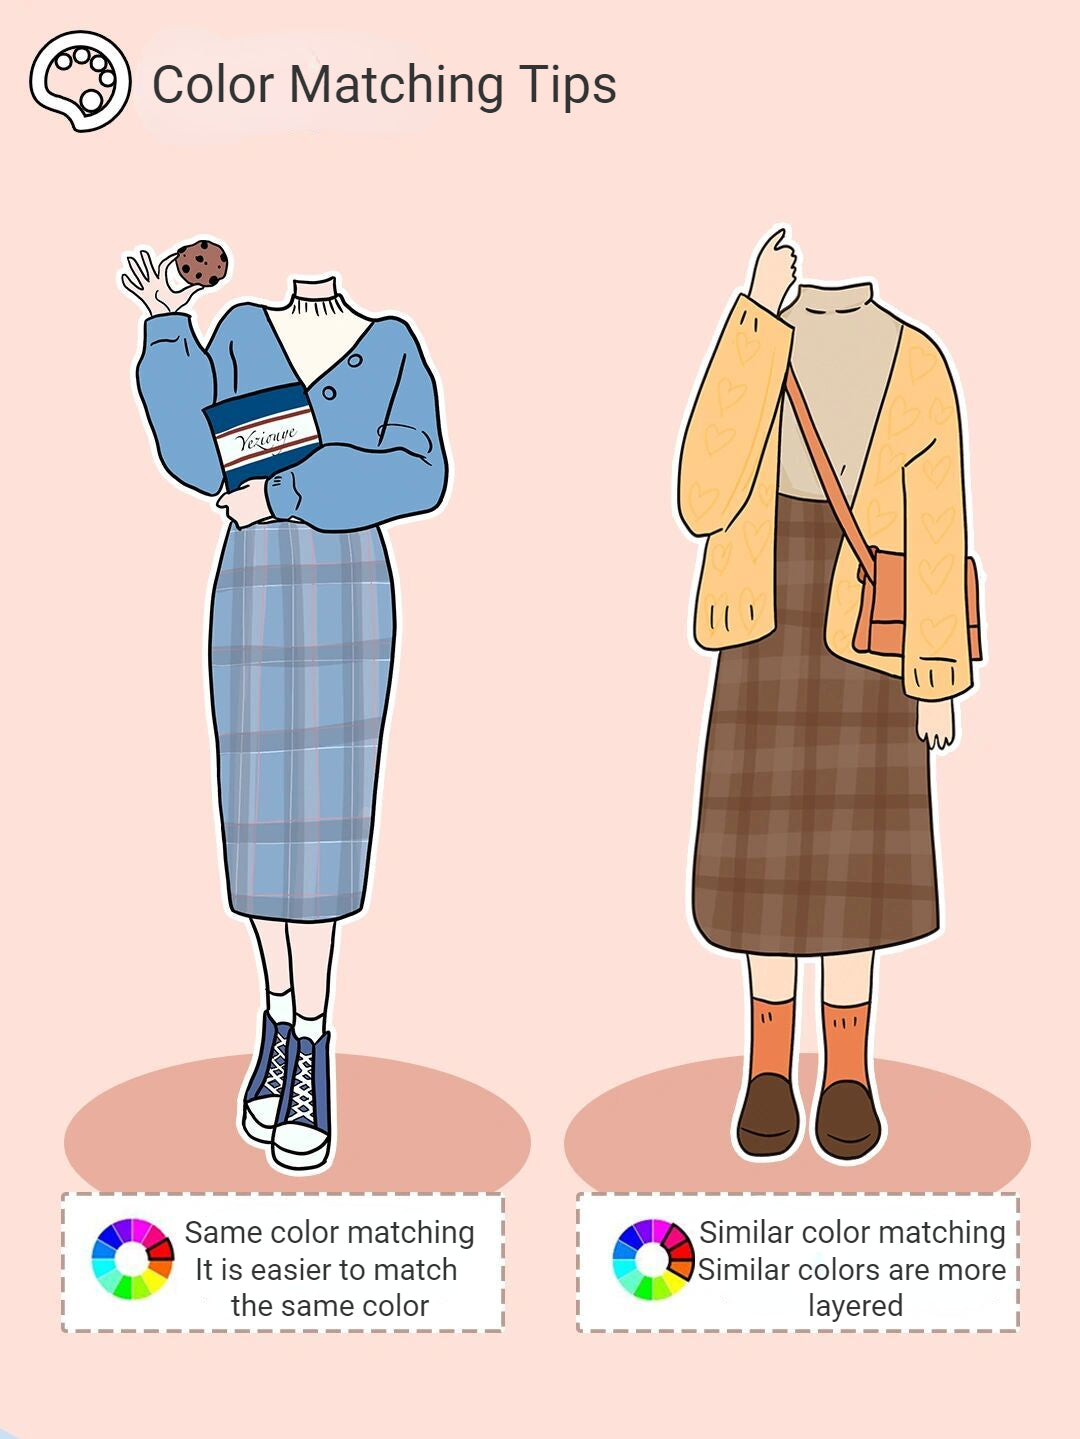 Farbleitfaden für passende Kleidung Frauen müssen Farbanpassungsfähigkeiten erlernen1